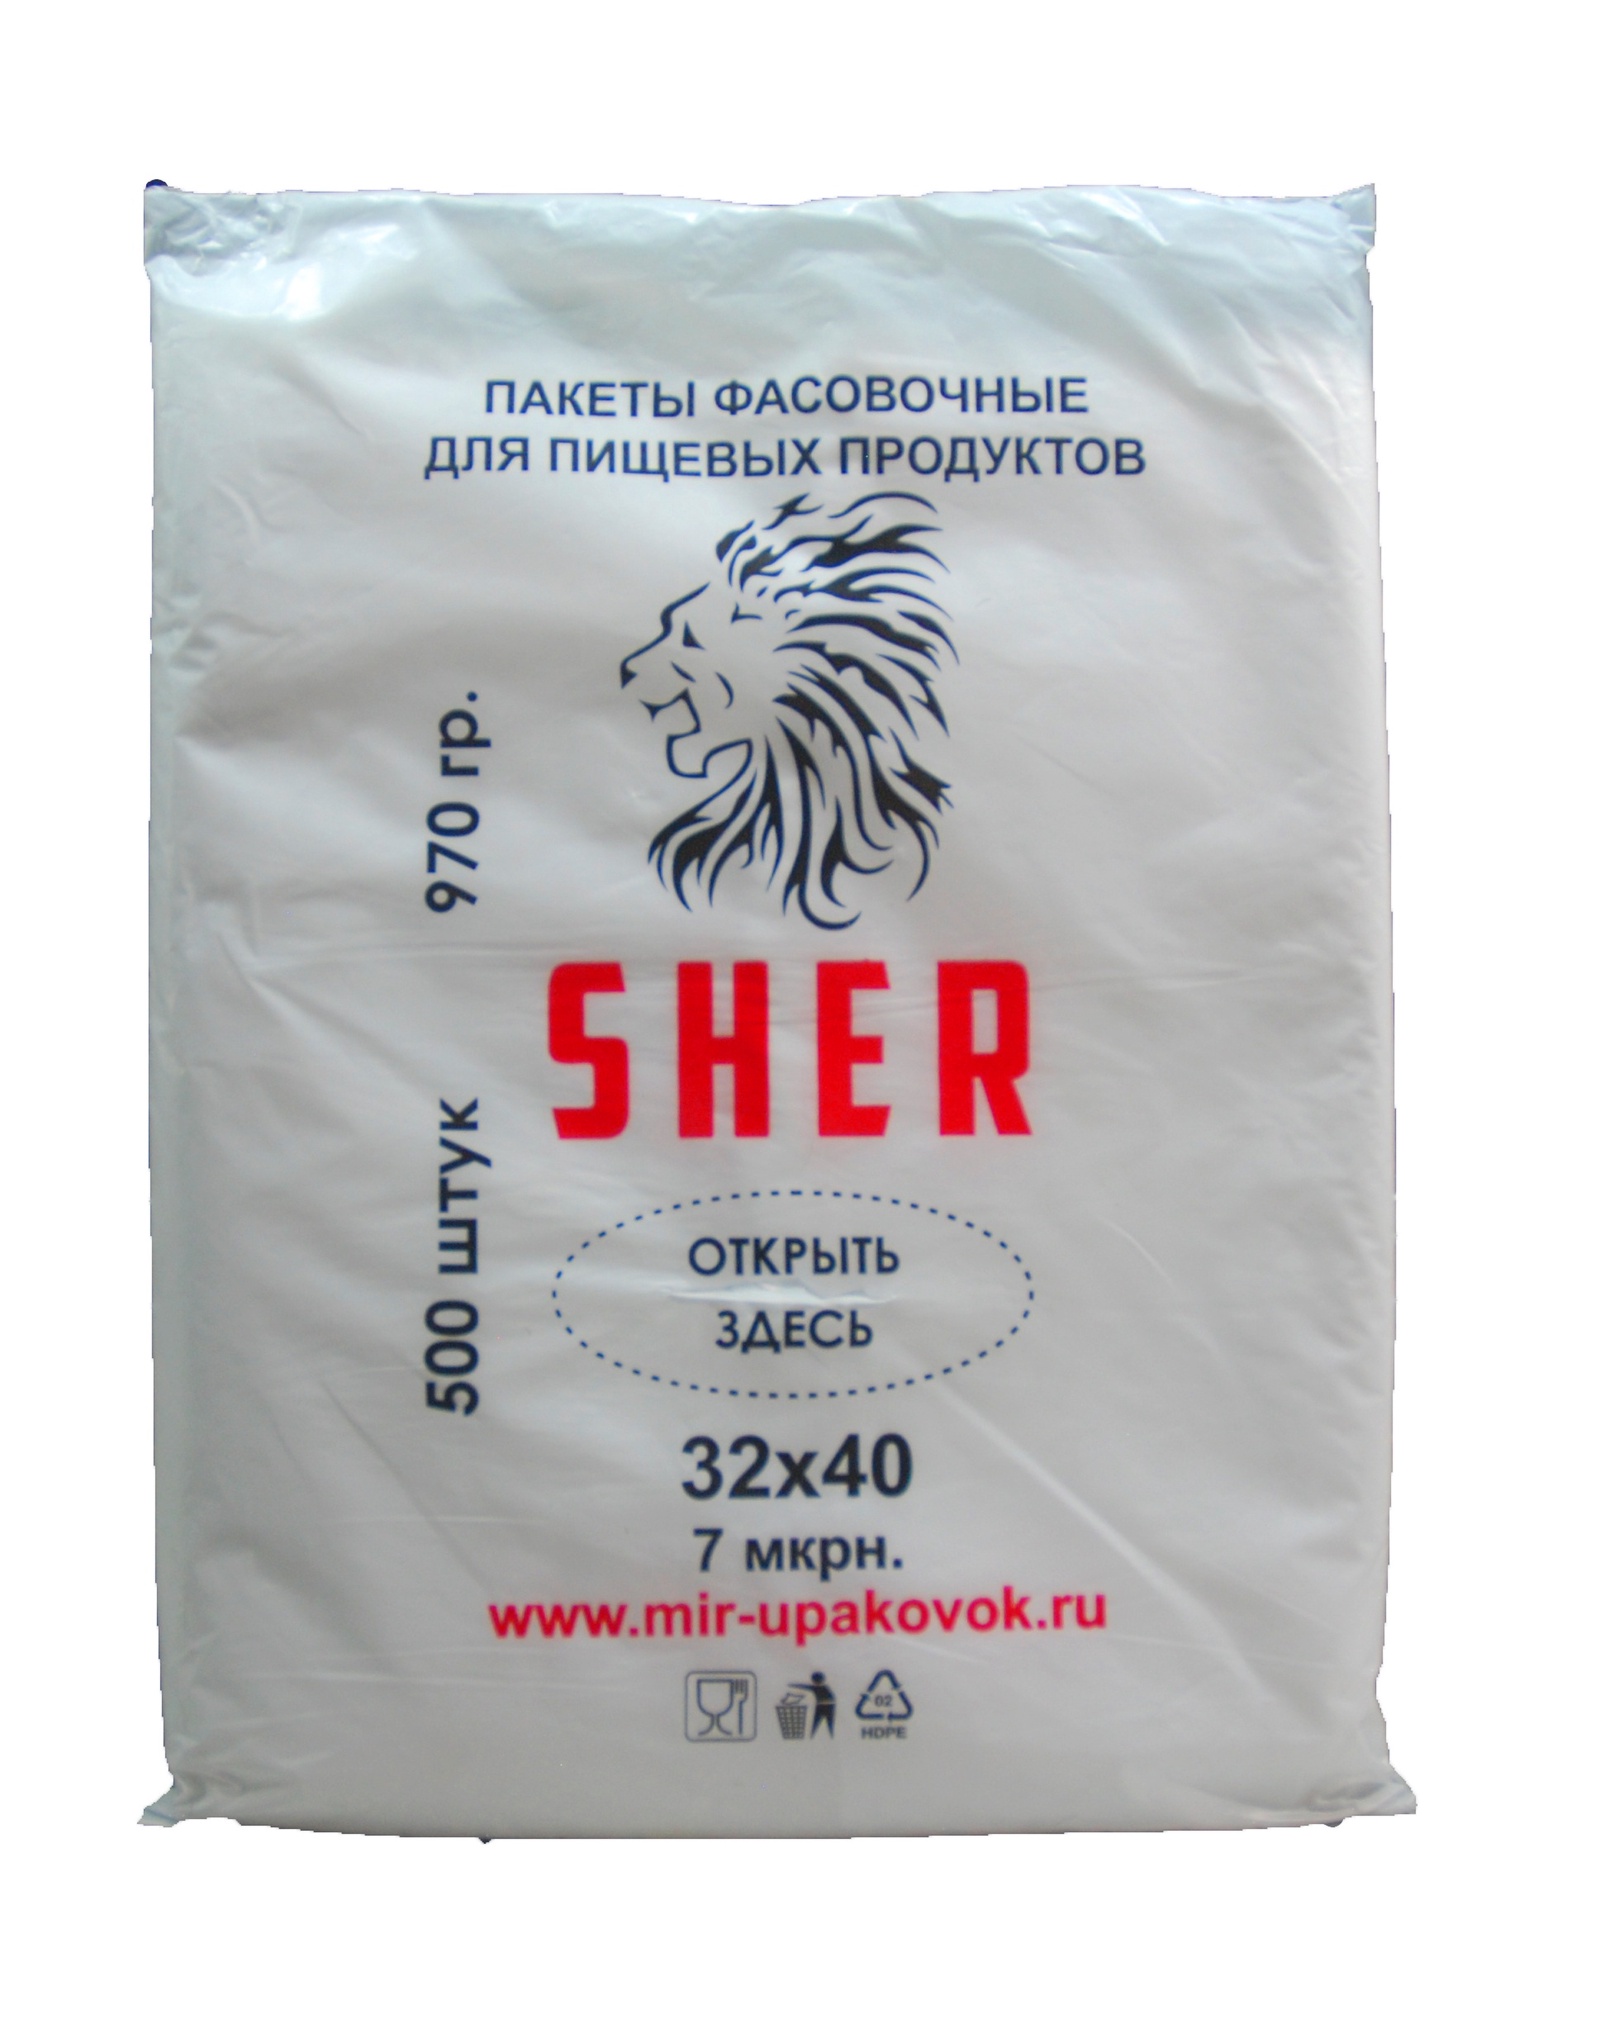 фото Упаковка  Пакеты фасовочные для пищевых продуктов "SHER" 32х40 500 шт, прозрачный